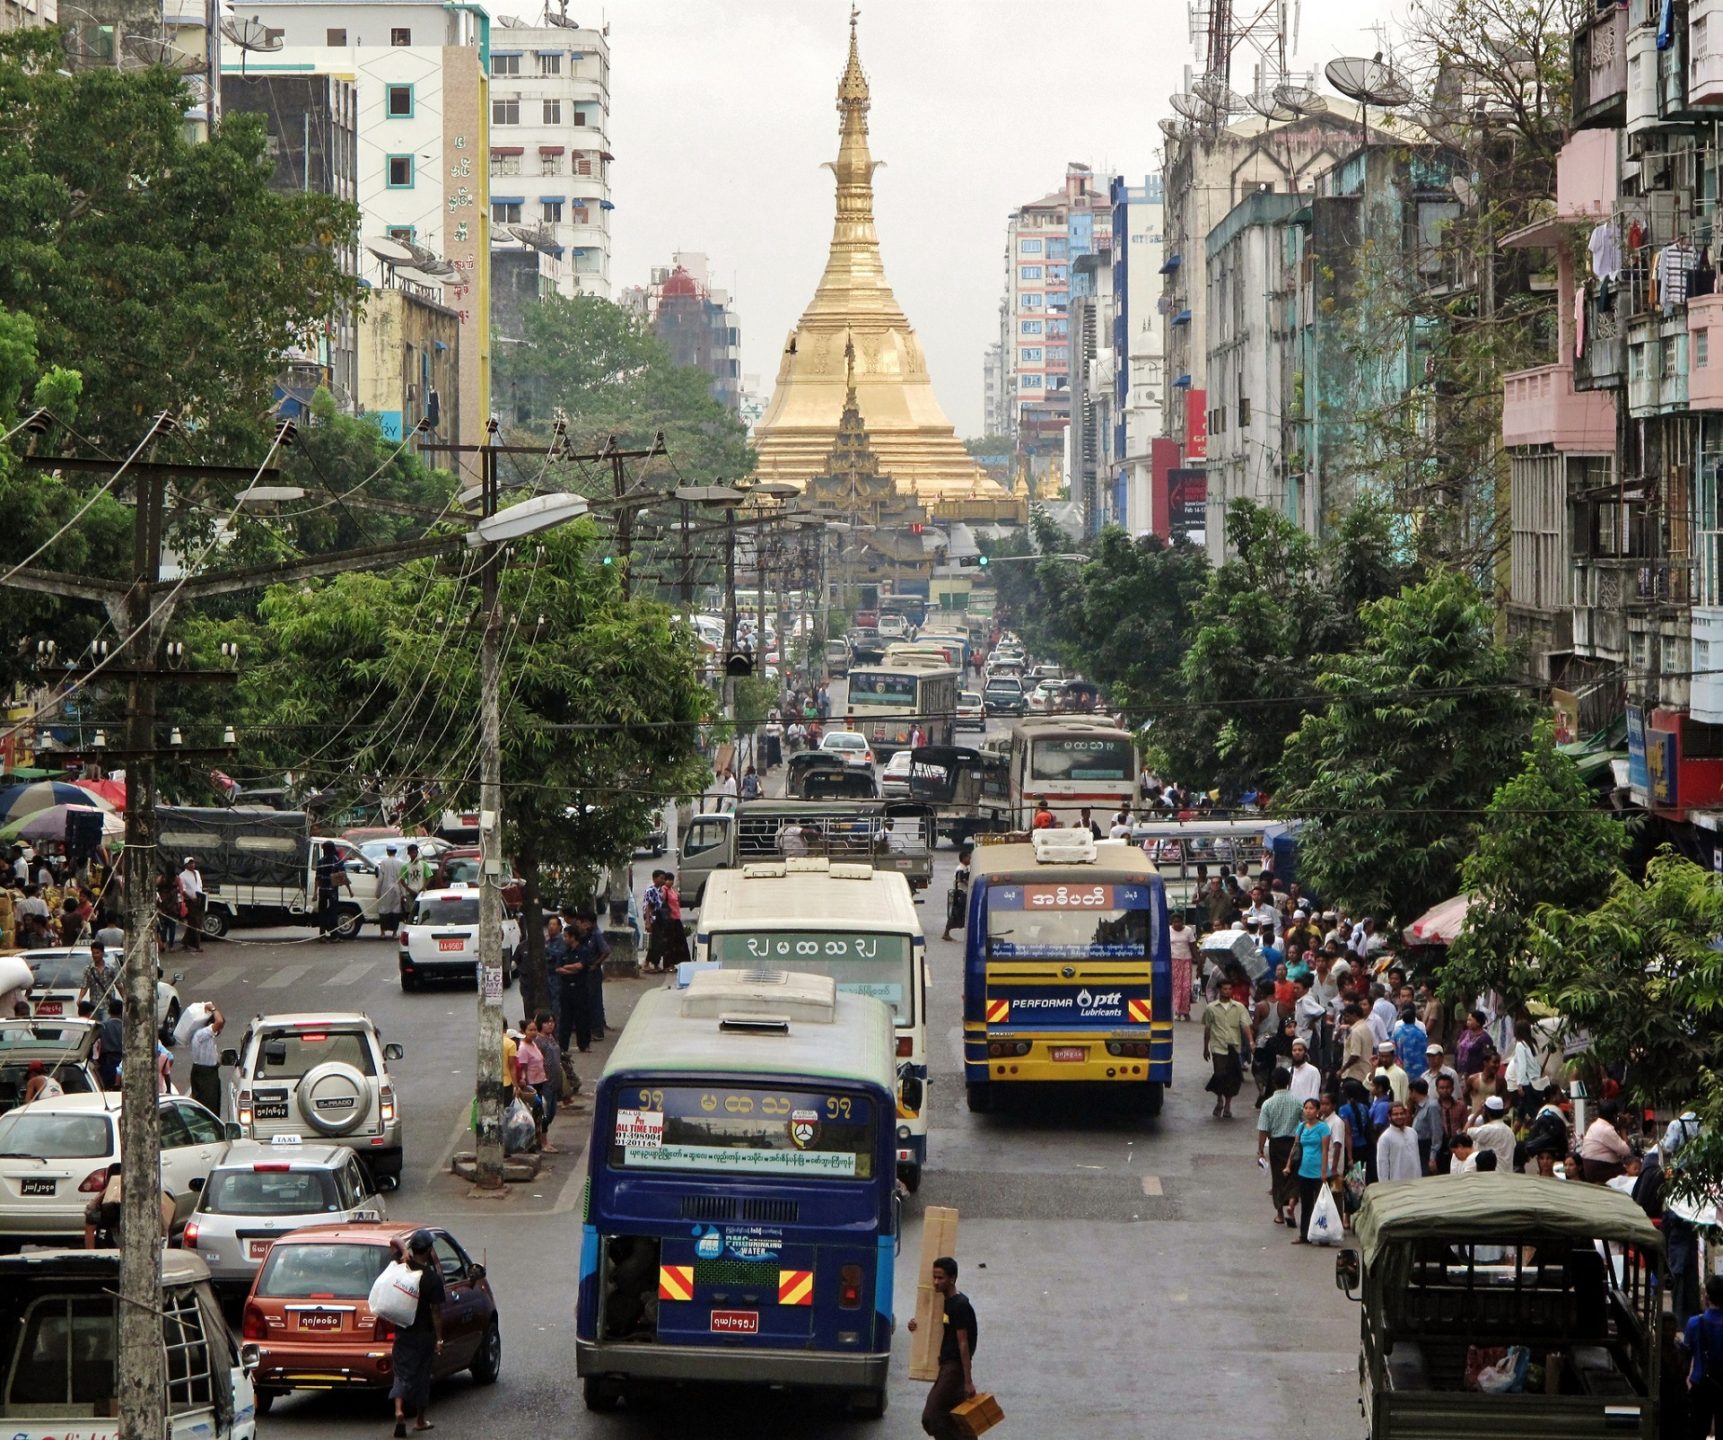 Le pape se rend en Birmanie le 26 novembre 2017. Il passera par Rangoun, la capitale du pays. | © Flickr/F. Anzola/CC BY 2.0